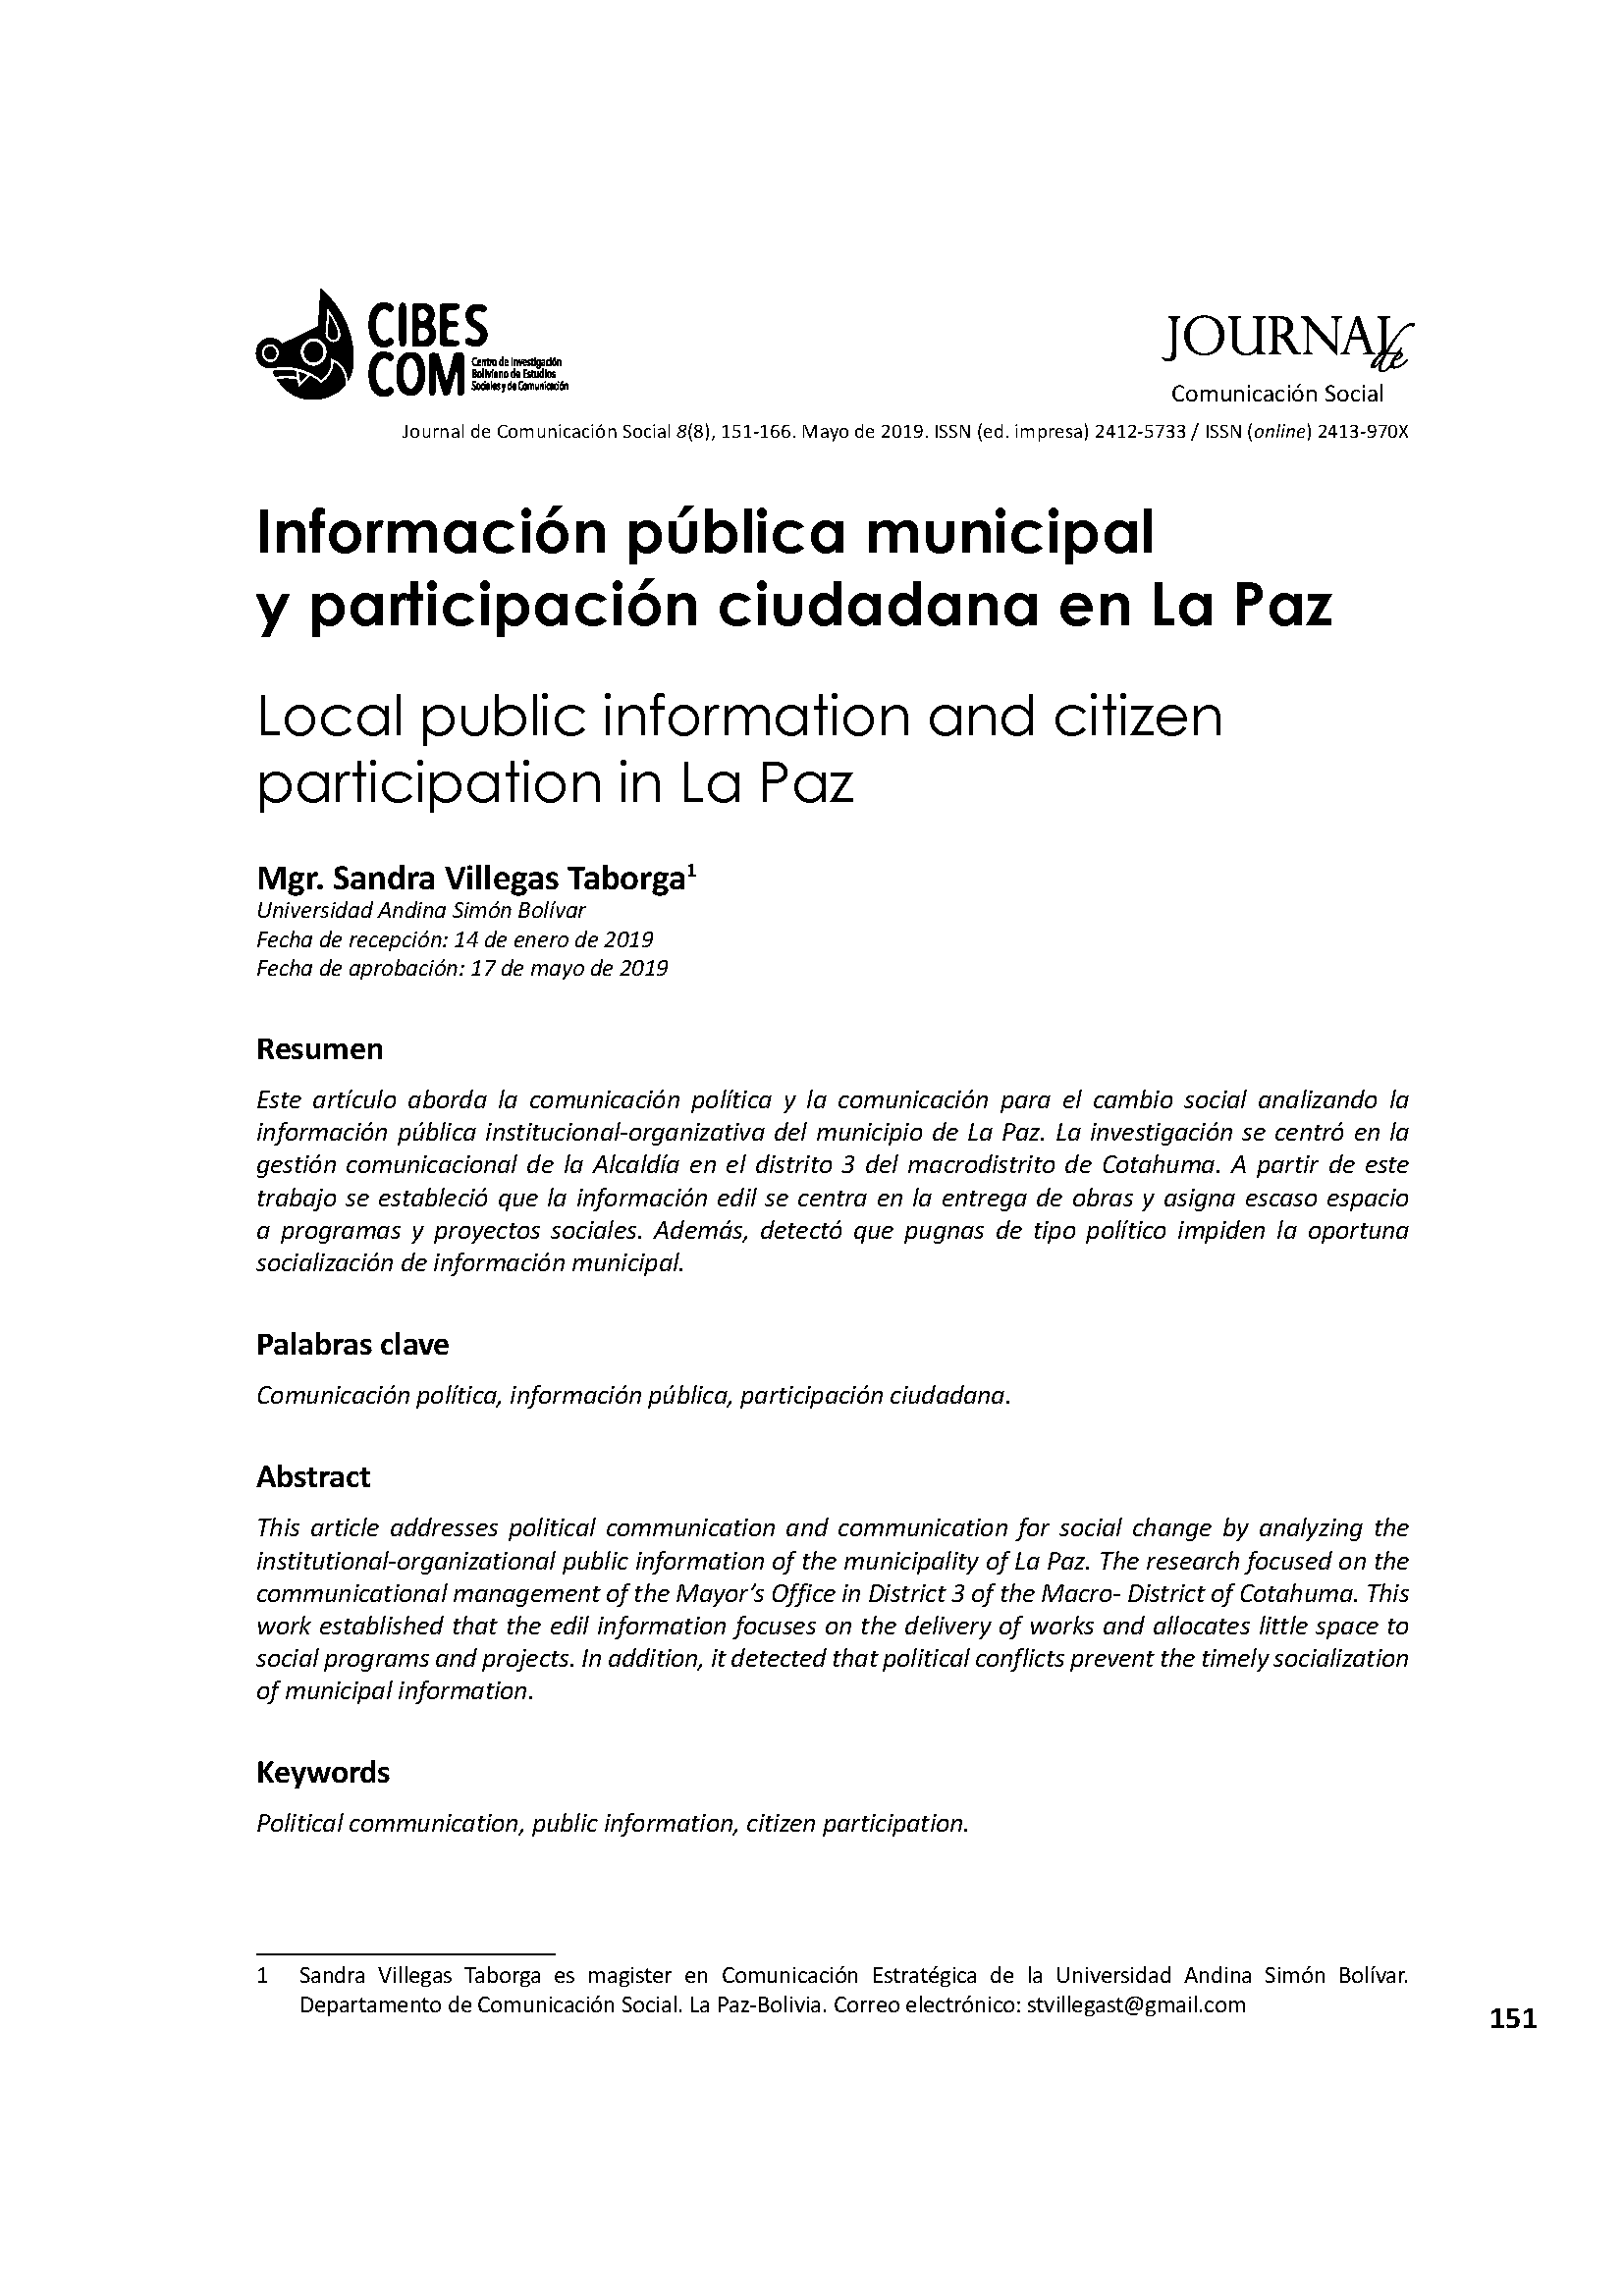 Información pública municipal y participación ciudadana en La Paz